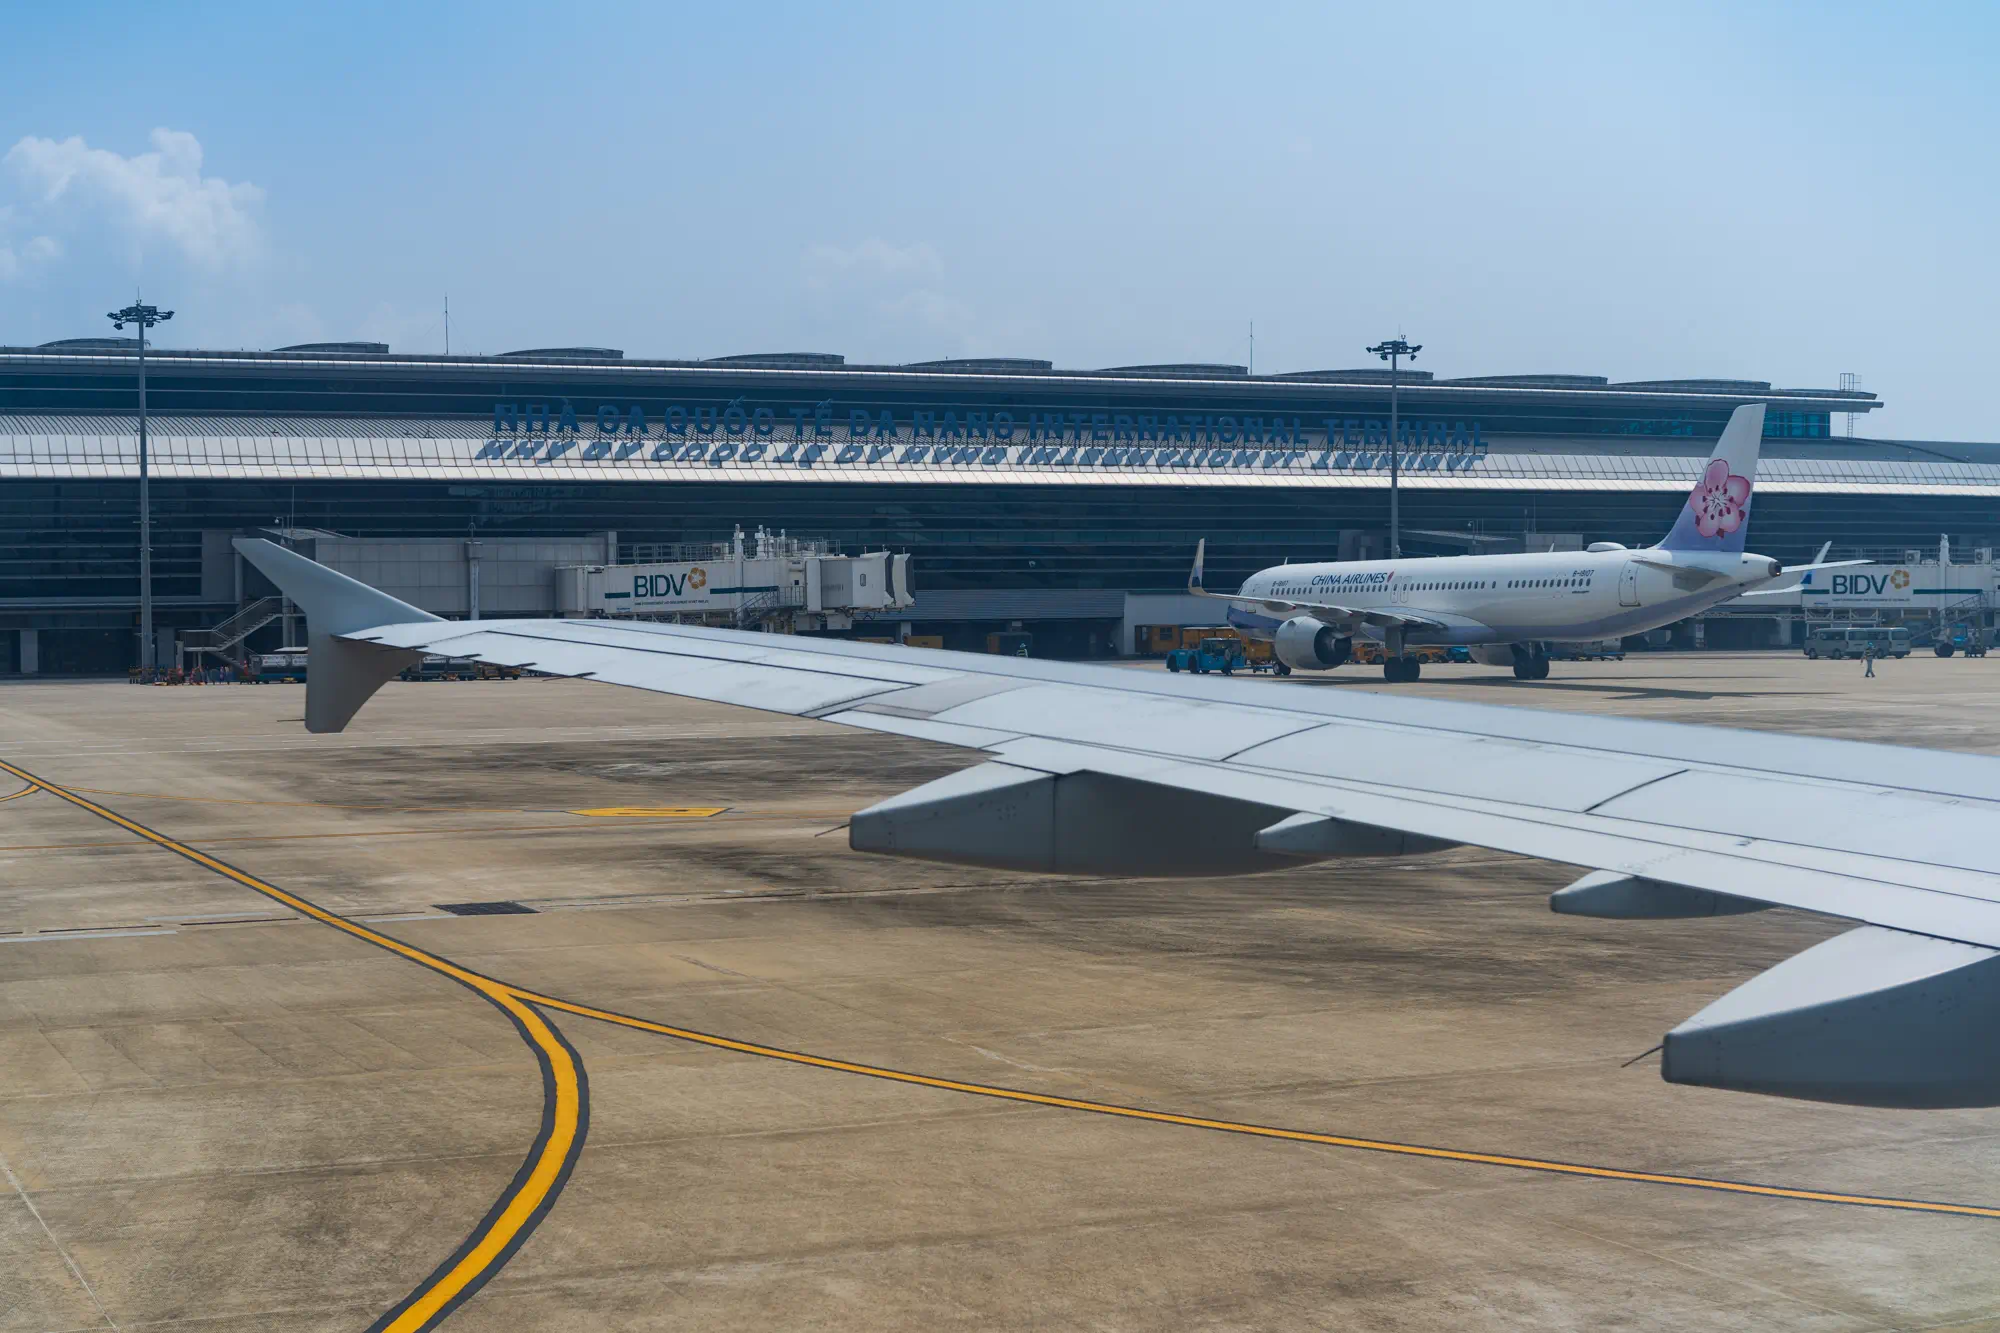 ダナン到着時の機内からの光景。翼とダナン国際空港のターミナル、空港名の看板が見える。